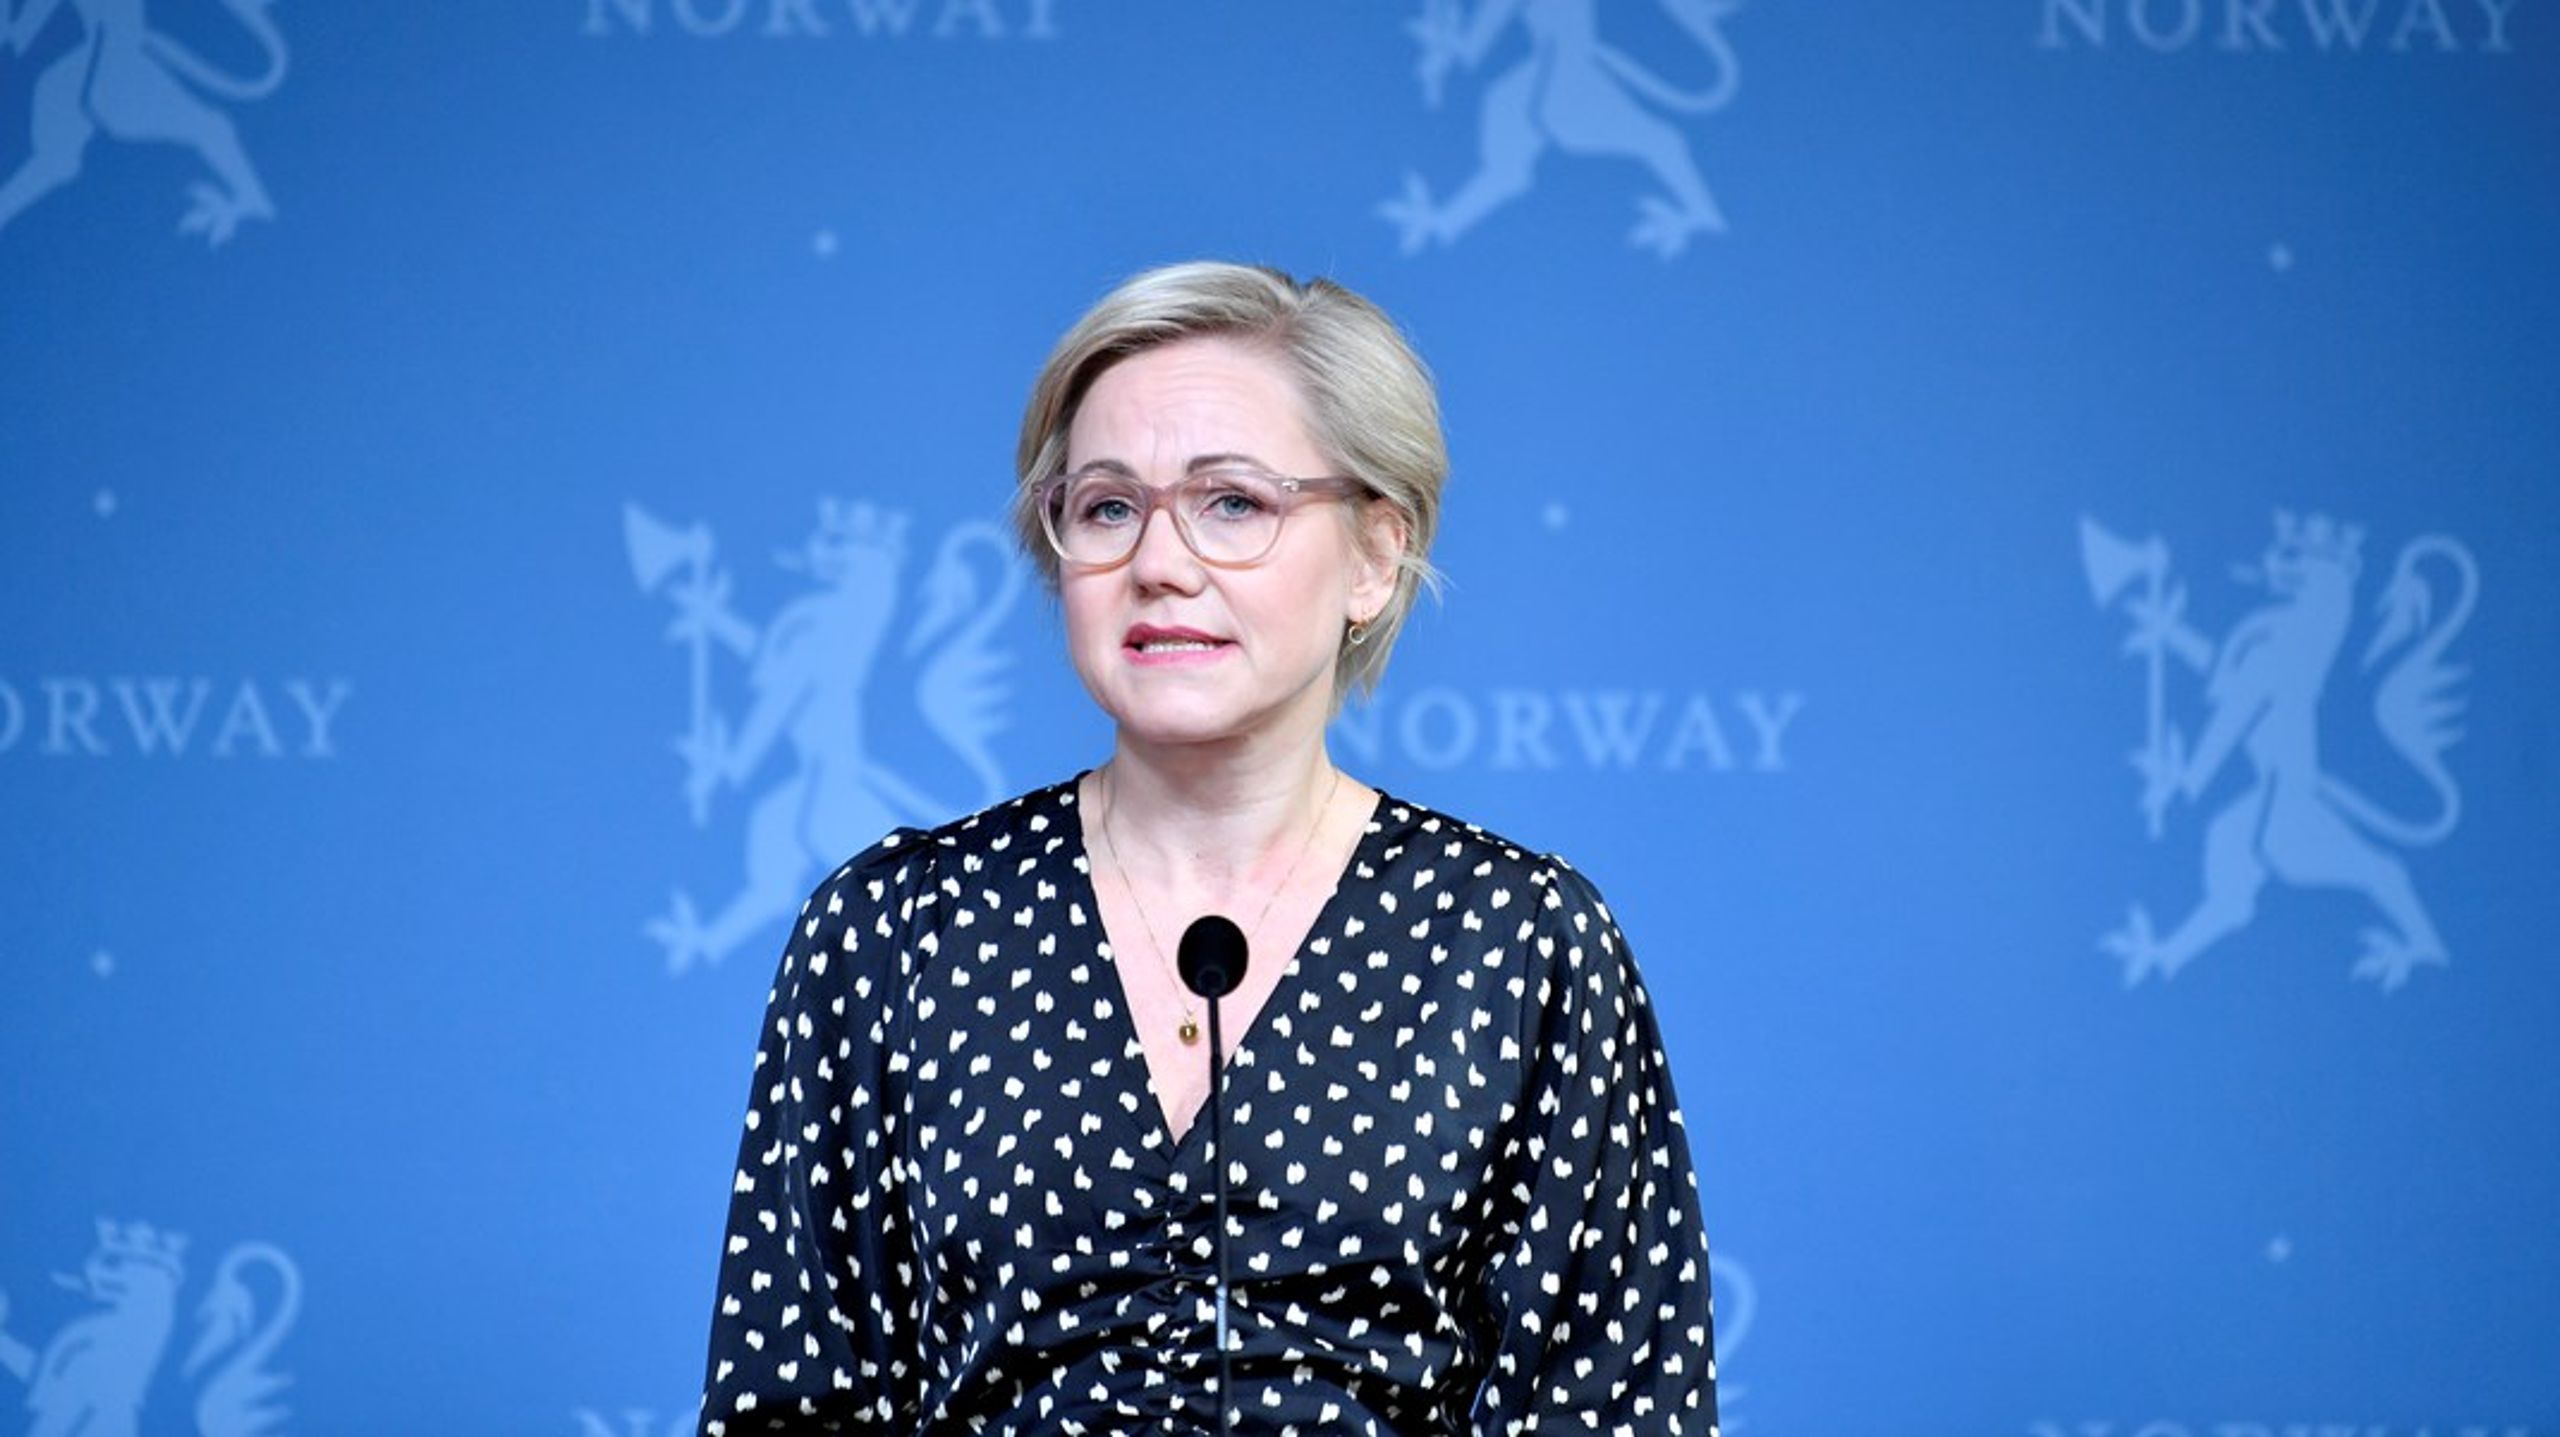 Helse- og omsorgsminister Ingvild Kjerkol har fått en omfattende rapport om de sosiale ulikhetene i helse i Norge. Hun lover at det vil komme tiltak i folkehelsemeldingen, som legges frem 31. mars.